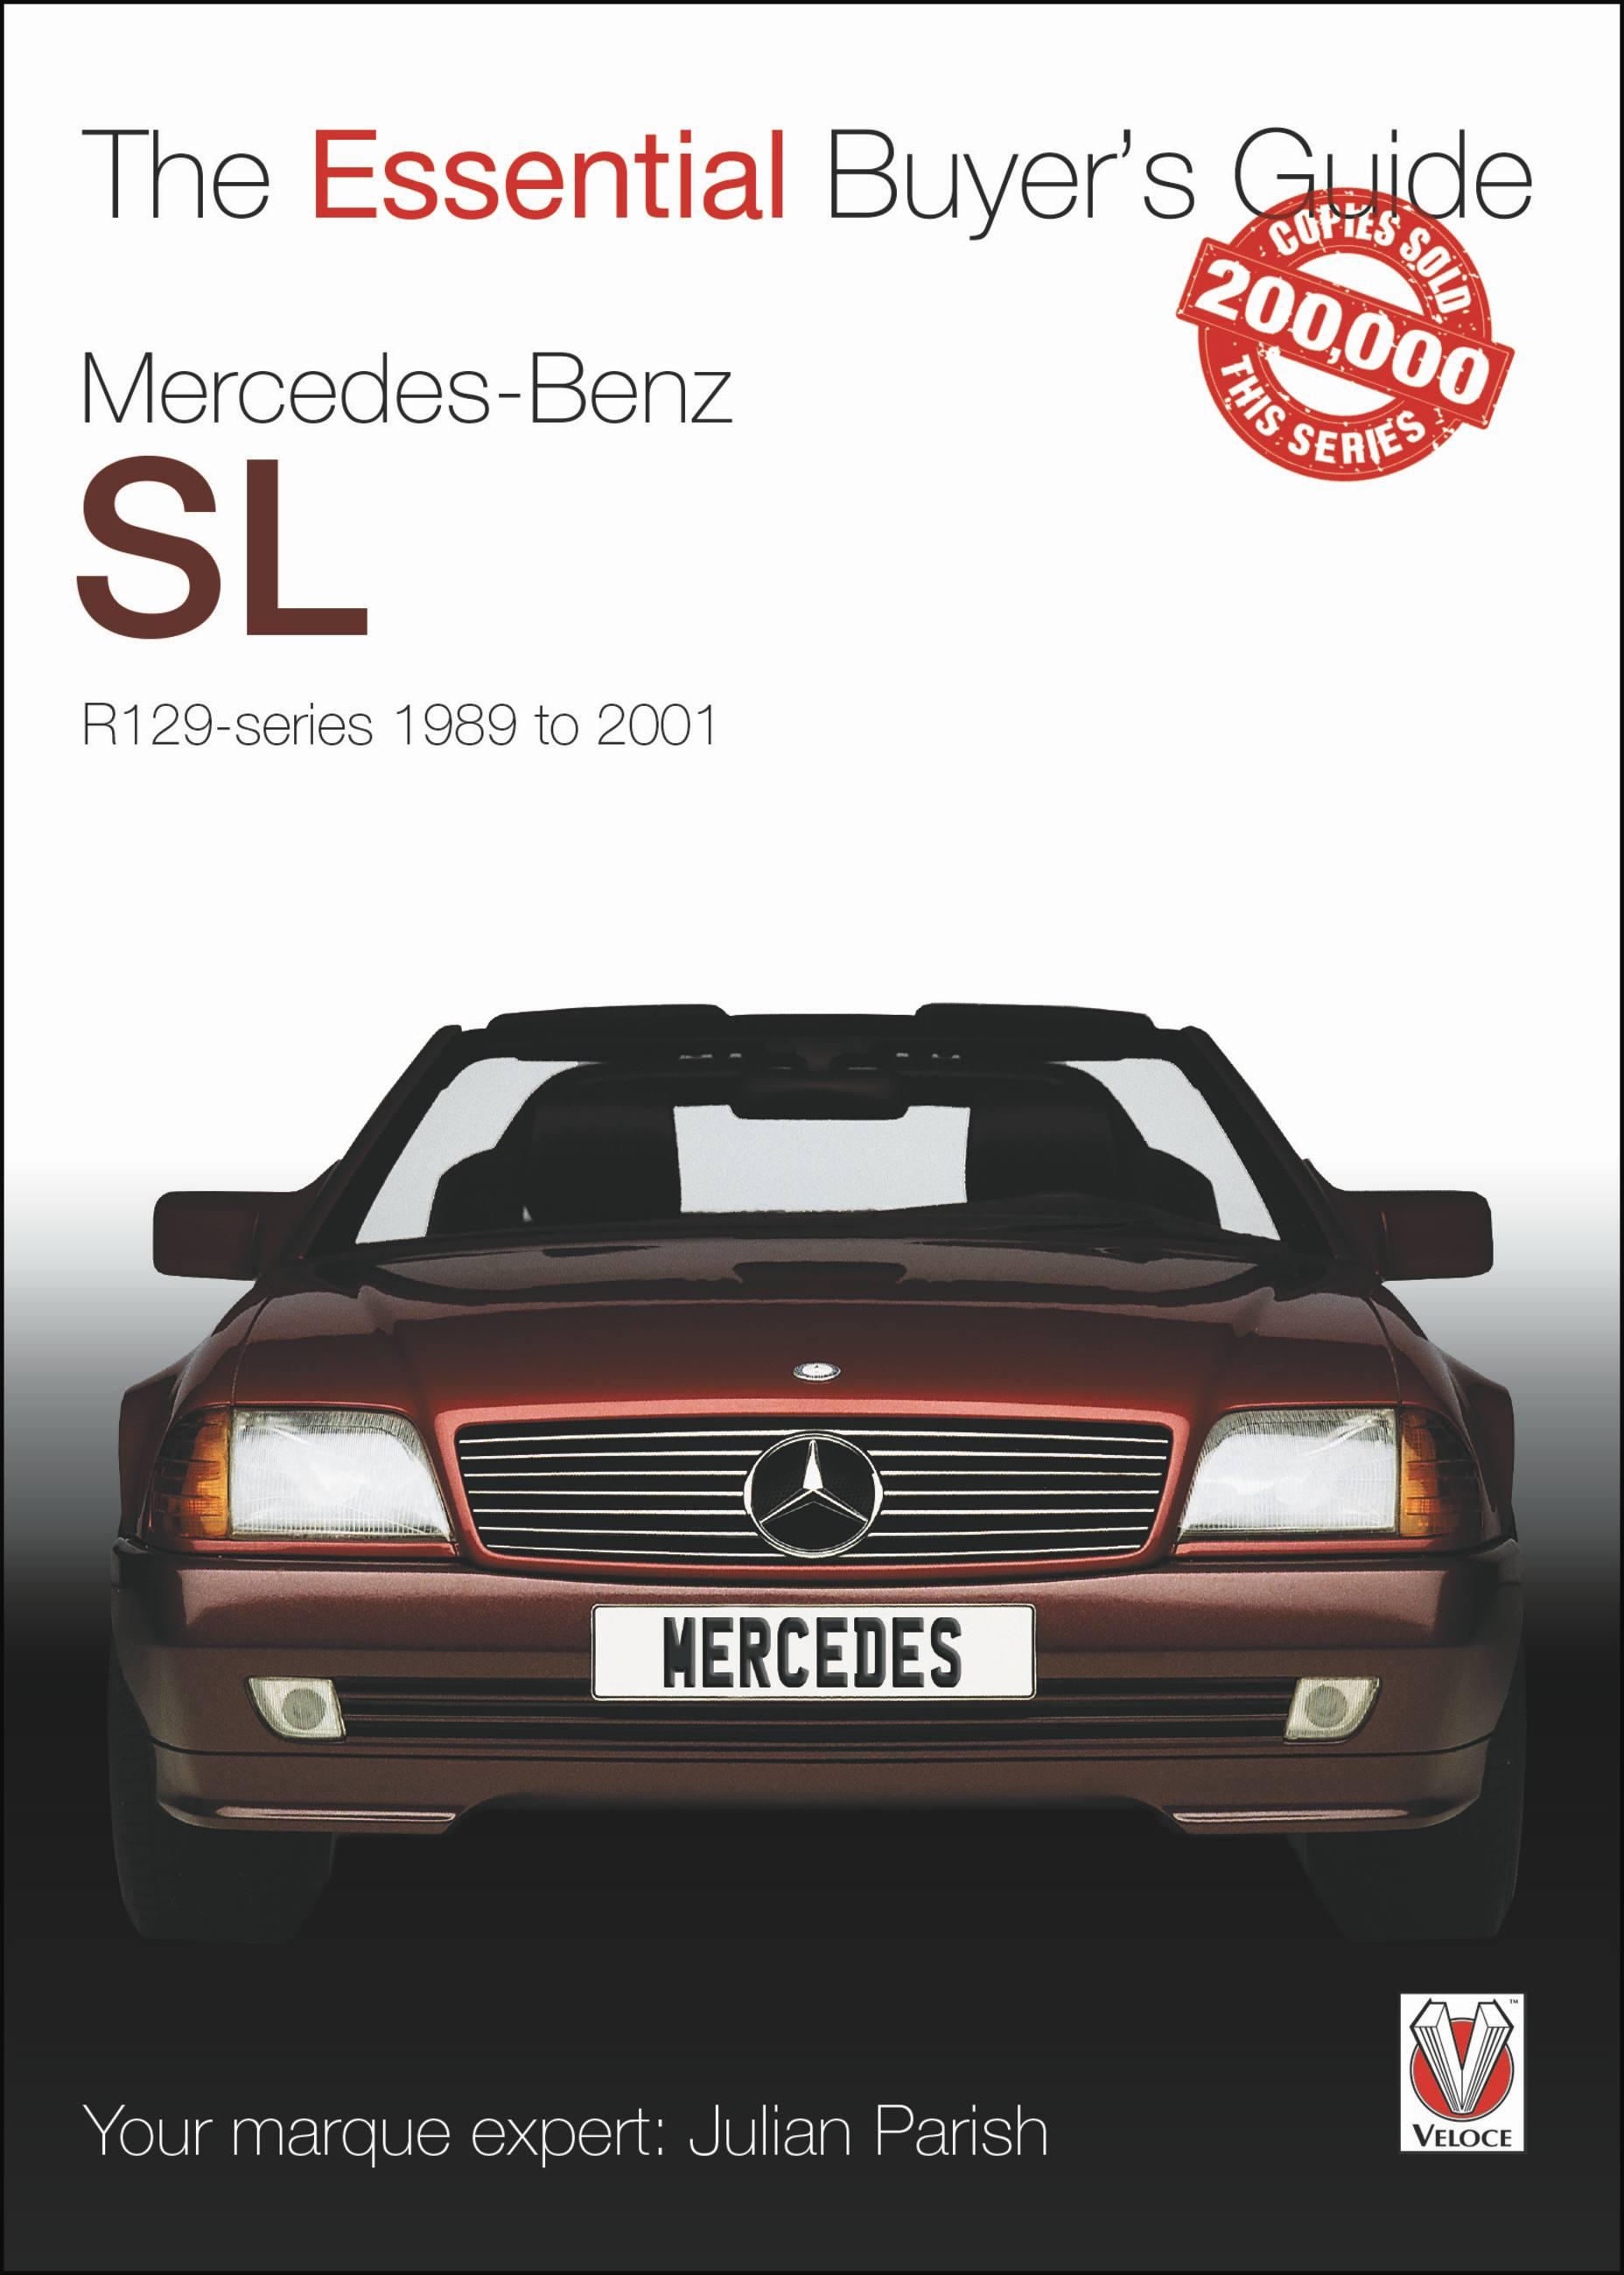 Mercedes-Benz Sl R129 Series 1989 to 2001 / Julian Parish / Taschenbuch / Kartoniert / Broschiert / Englisch / 2016 / David & Charles / EAN 9781845848989 - Parish, Julian